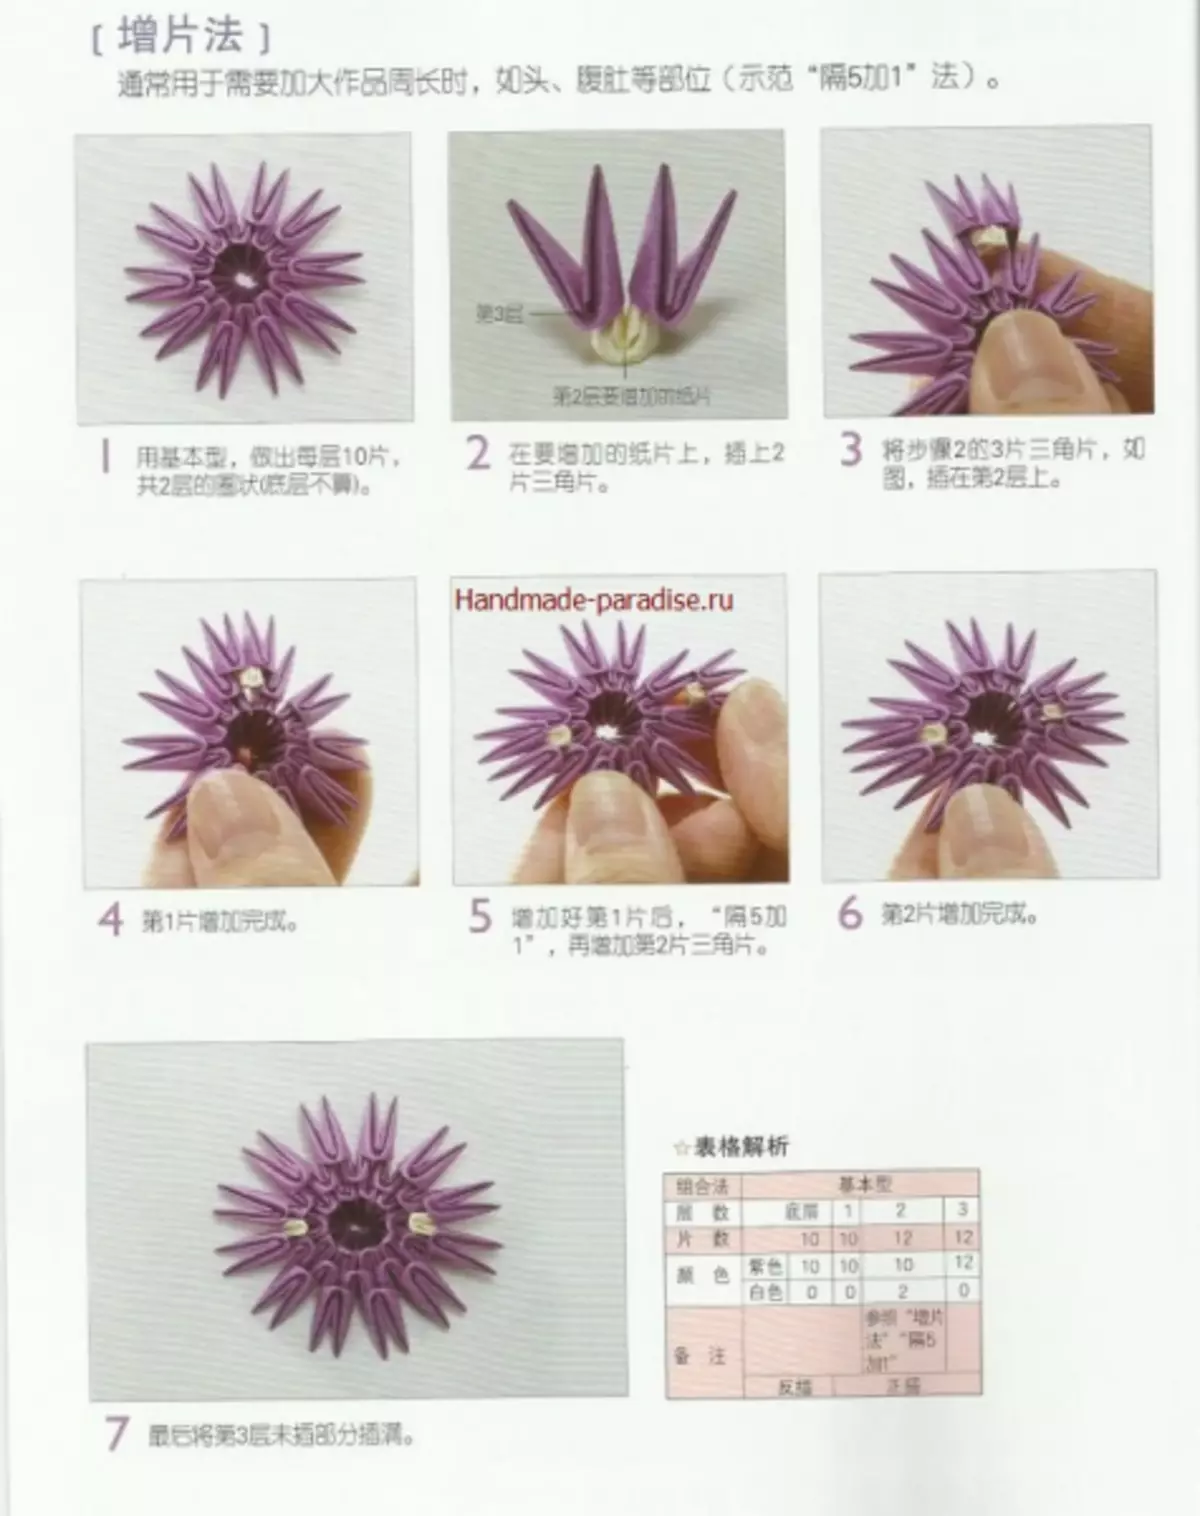 Մոդուլային օրիգամի: Japanese ապոնական ամսագիր վարպետության դասերով